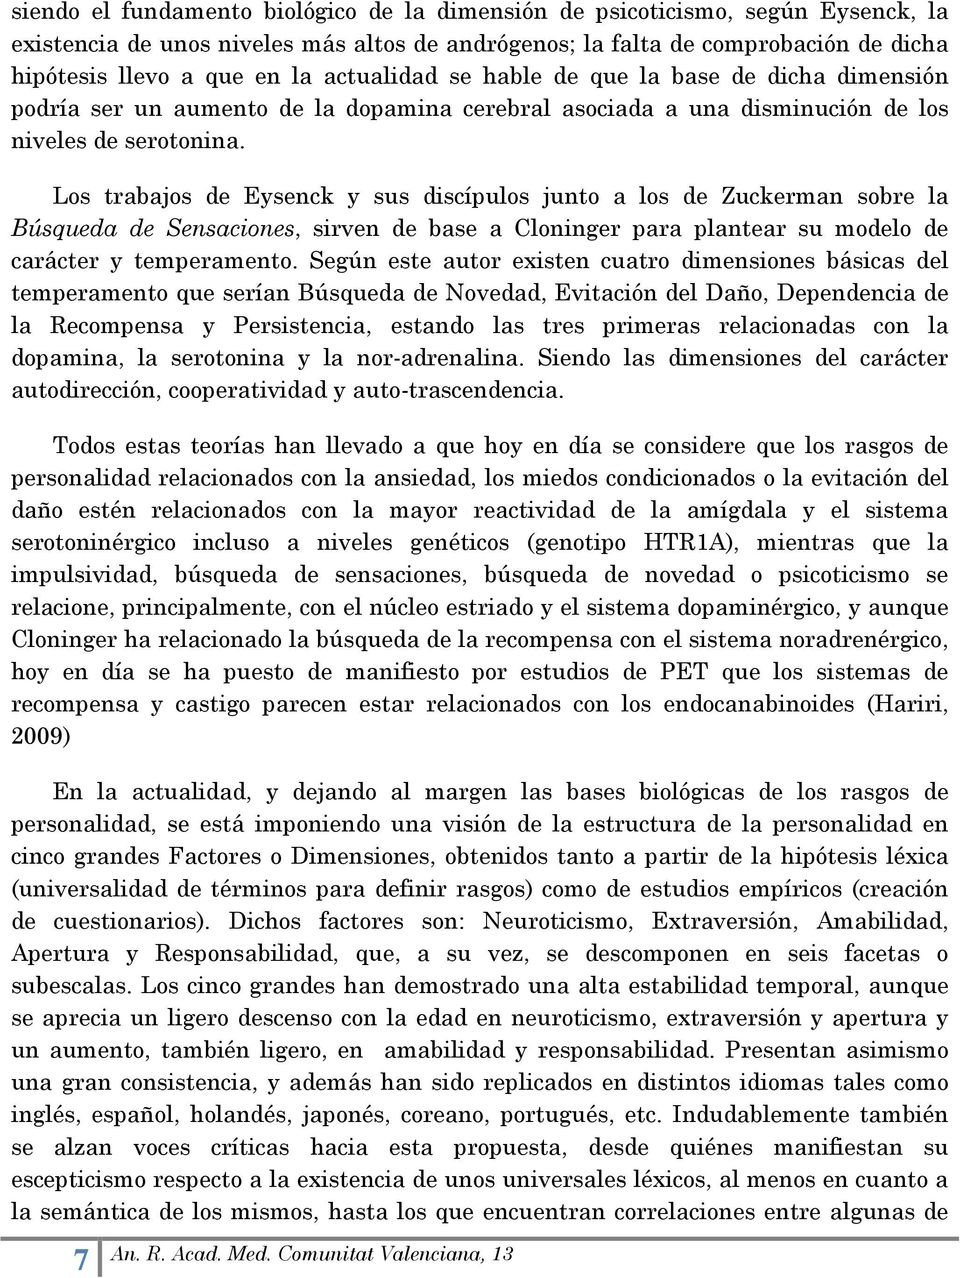 Los trabajos de Eysenck y sus discípulos junto a los de Zuckerman sobre la Búsqueda de Sensaciones, sirven de base a Cloninger para plantear su modelo de carácter y temperamento.